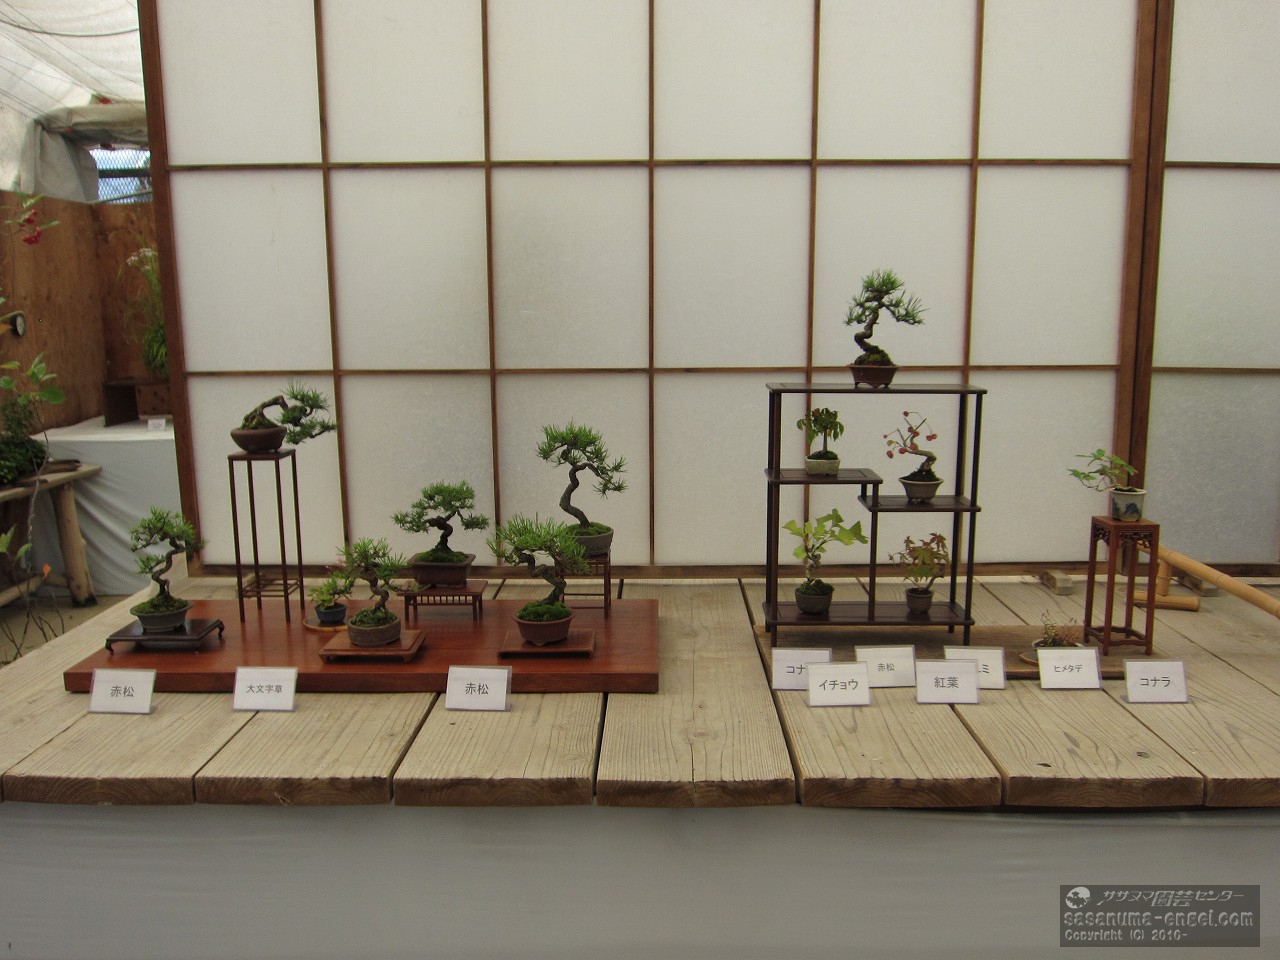 赤松（6本）大文字草、（上左から）赤松、コナラ、マユミ、イチョウ、紅葉、ヒメタデ、コナラ